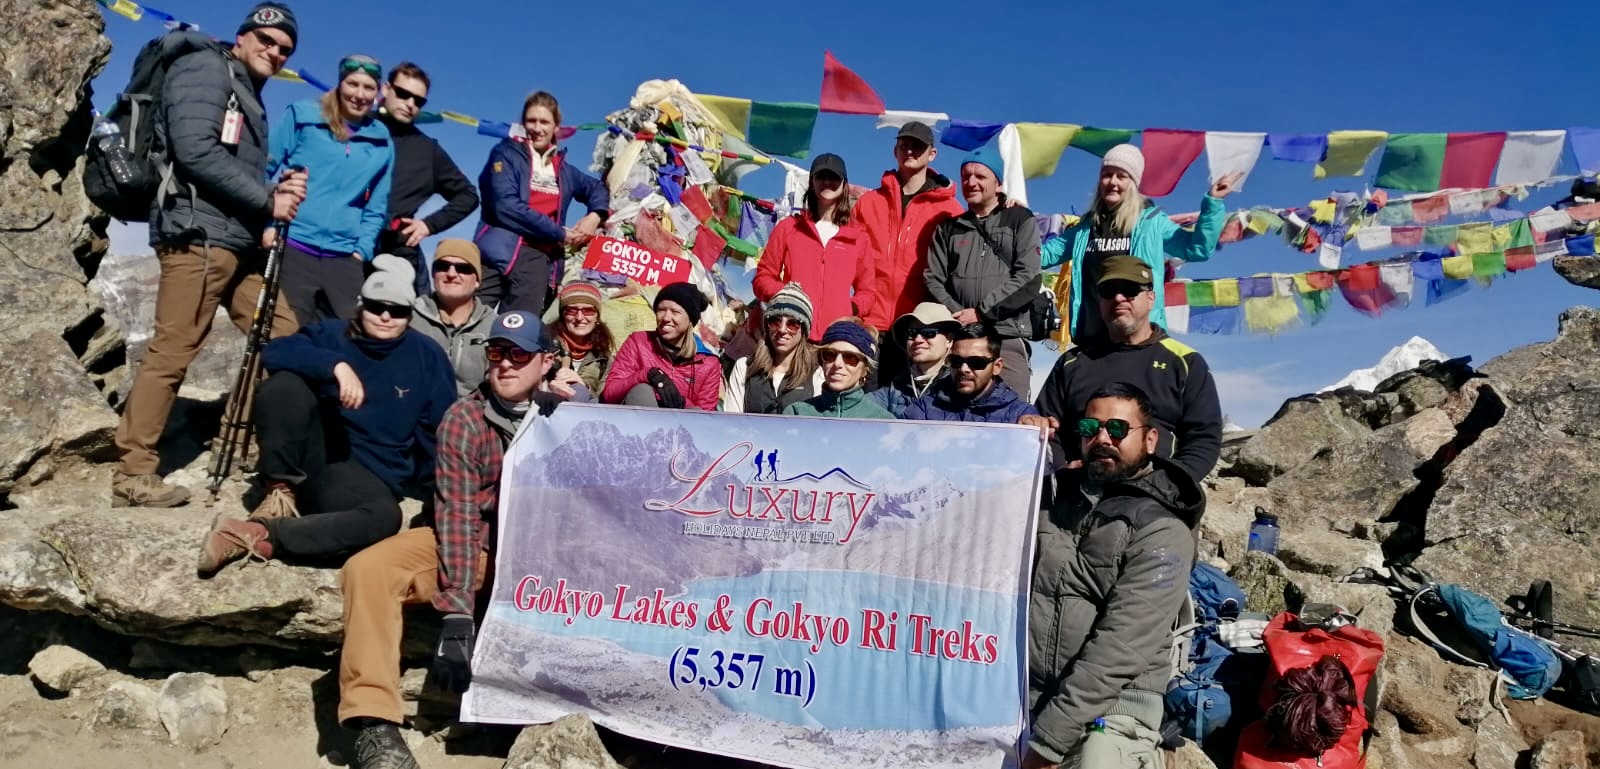 nepal to dubai tour package 2022